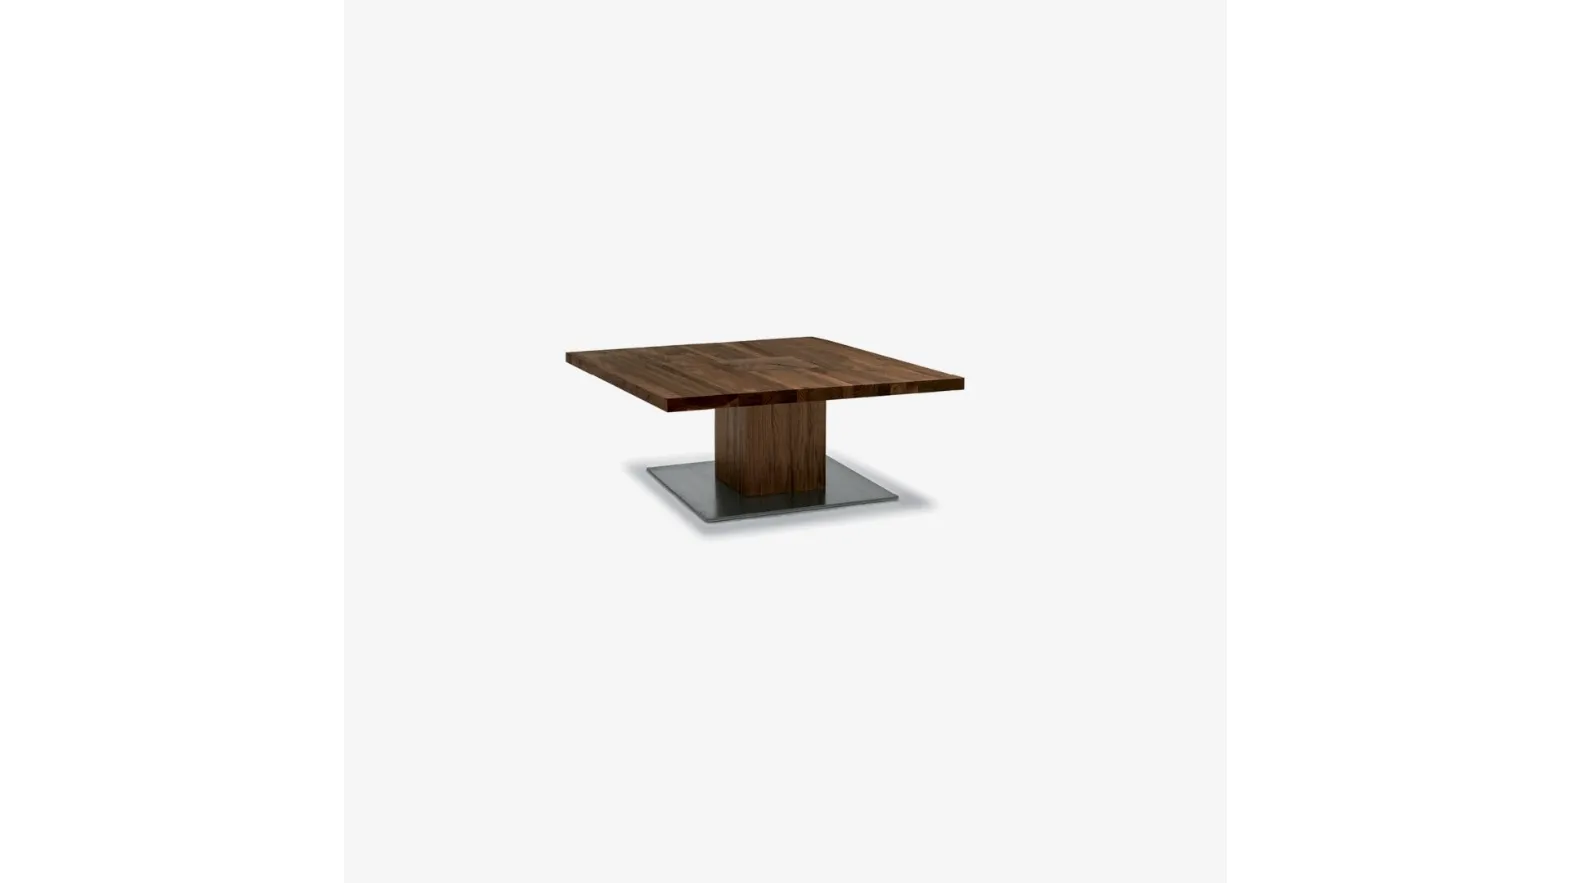 Tavolino Boss Executive Small realizzato interamente in legno massello con gamba a vista sul top ricavata da un blocco unico e piastra a pavimento in ferro di Riva1920